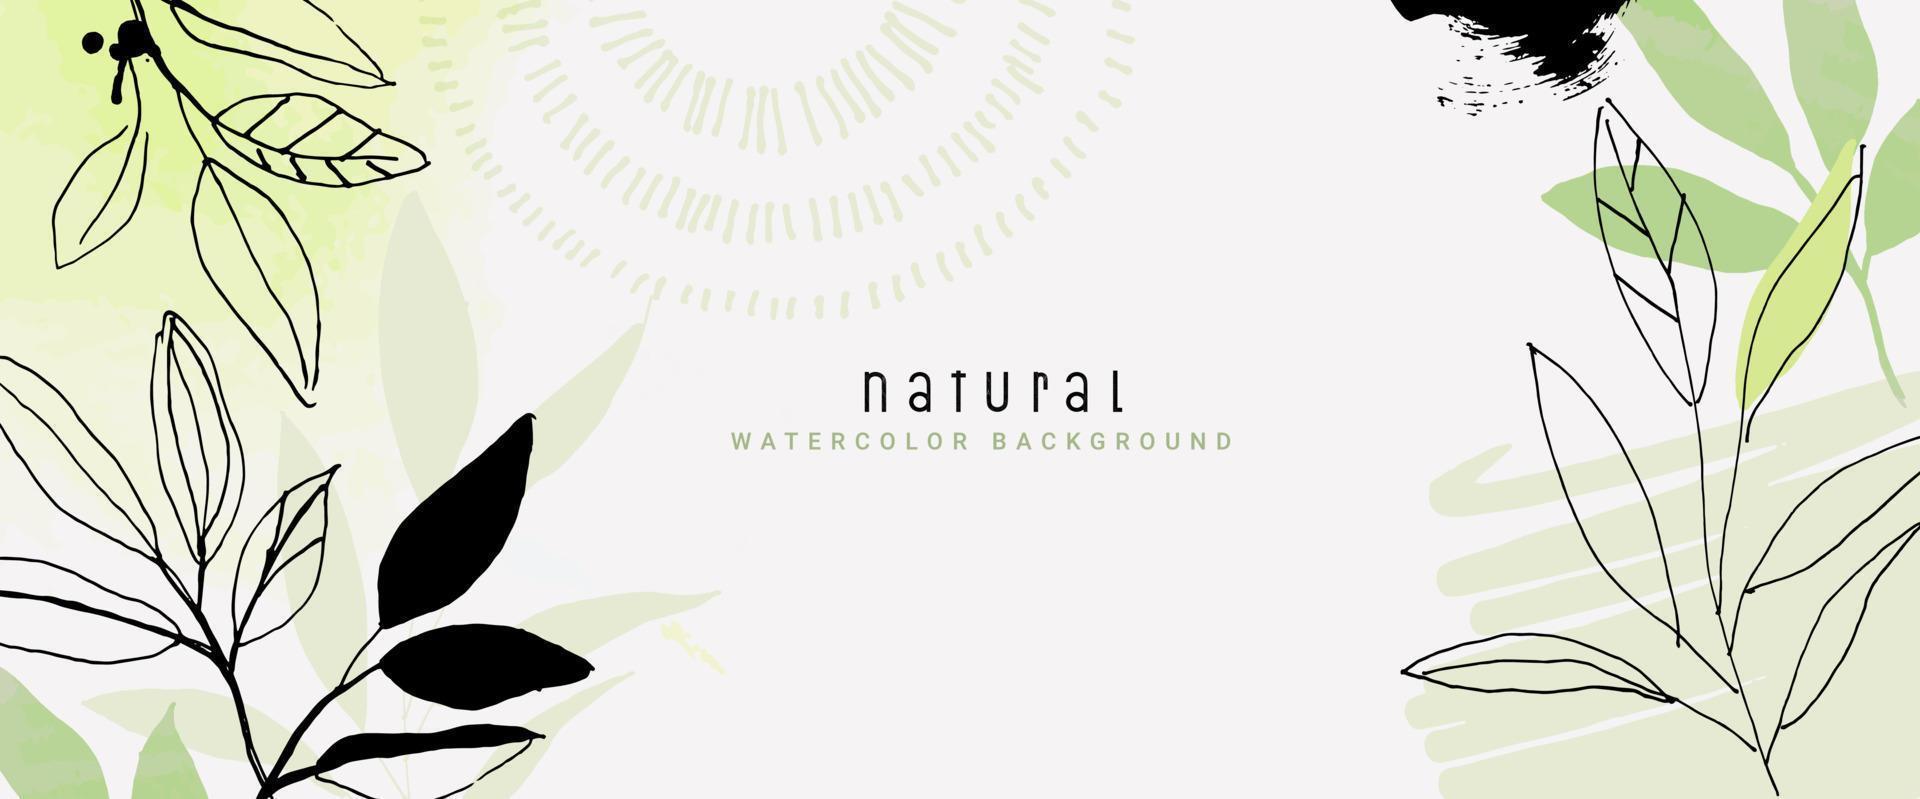 fondo de vector de acuarela natural para diseño gráfico y web, presentación de negocios, marketing. ilustración dibujada a mano para productos naturales y orgánicos, belleza y moda, cosmética y bienestar.